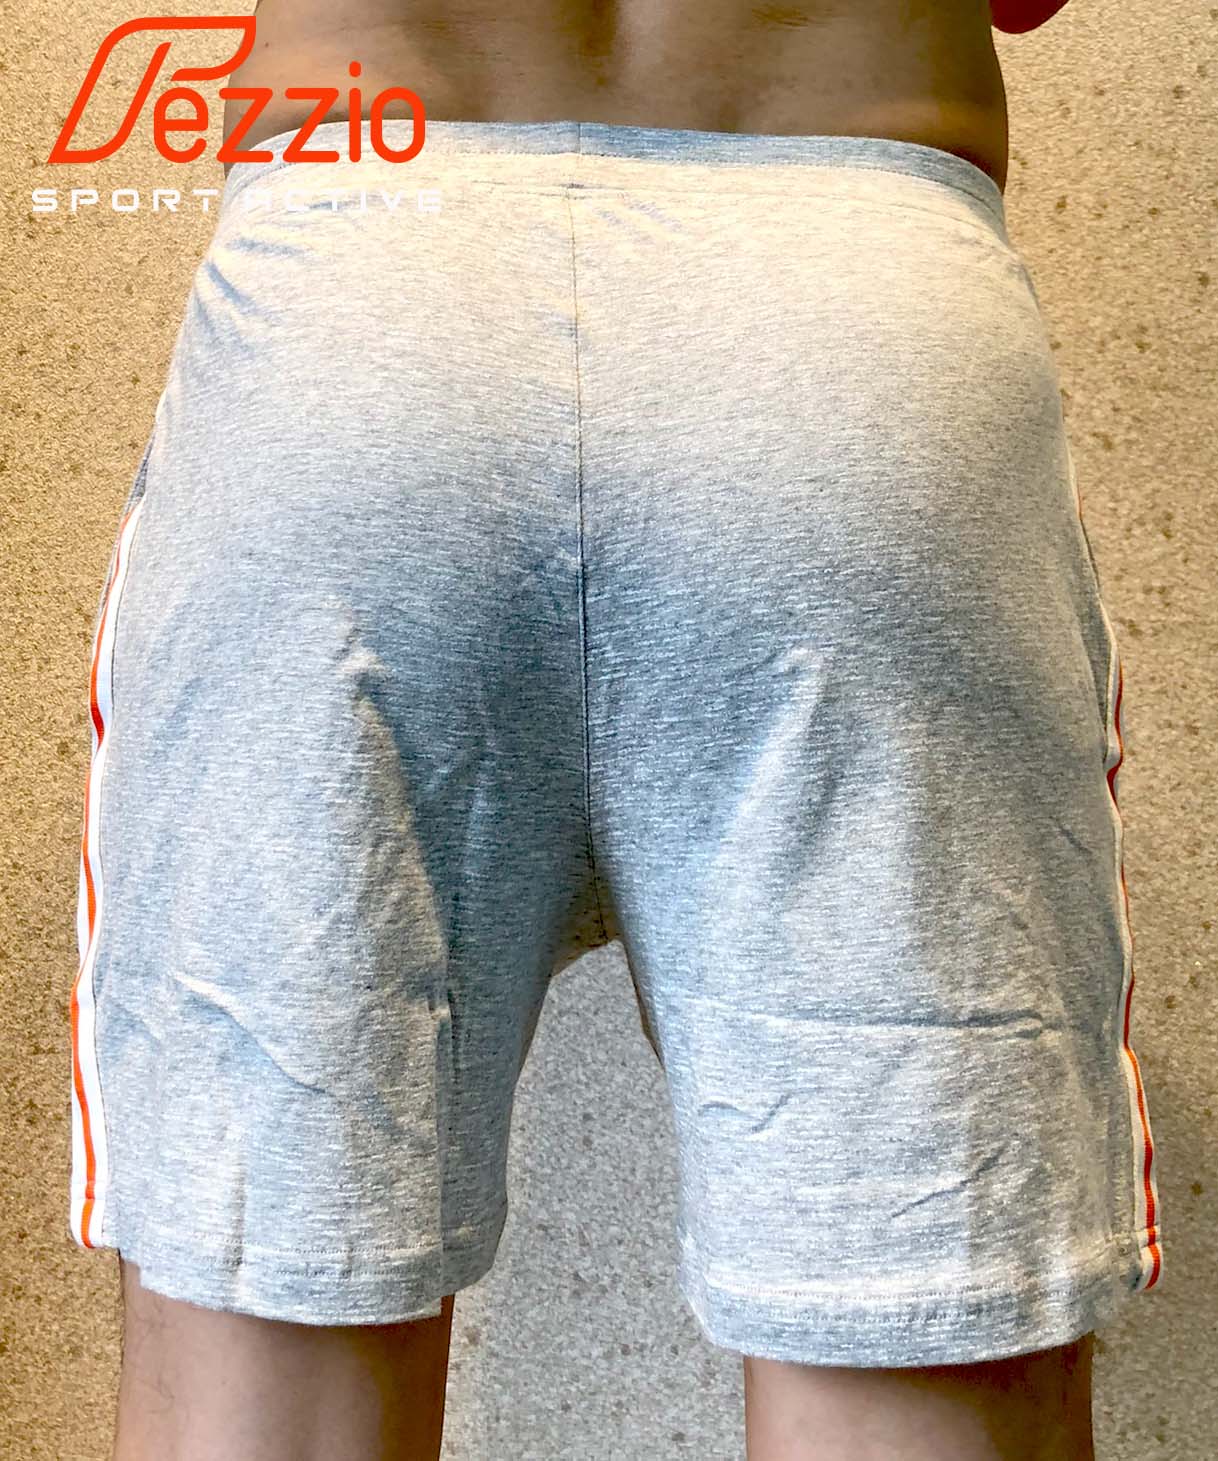 Quần đùi mặc nhà chất thun cotton 100% thương hiệu Fezzio